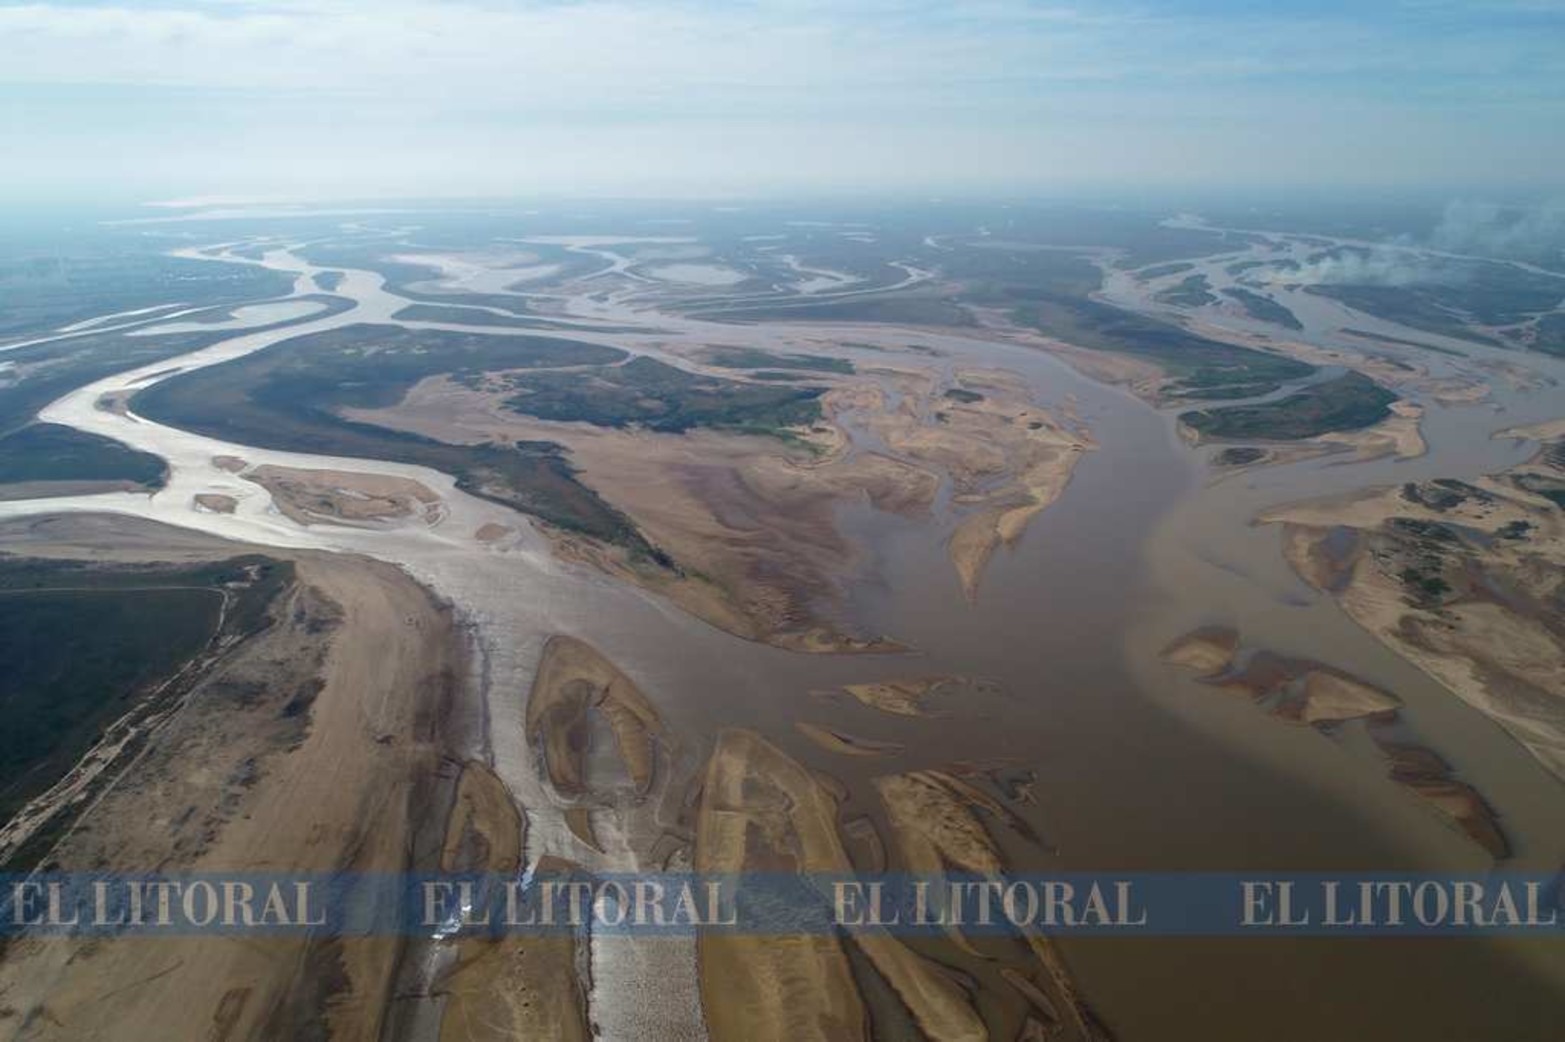 Aquí nace la laguna Setúbal. A la izquierda el arroyo el Correntoso. A la derecha de la imagen, la desembocadura del arroyo Leyes.